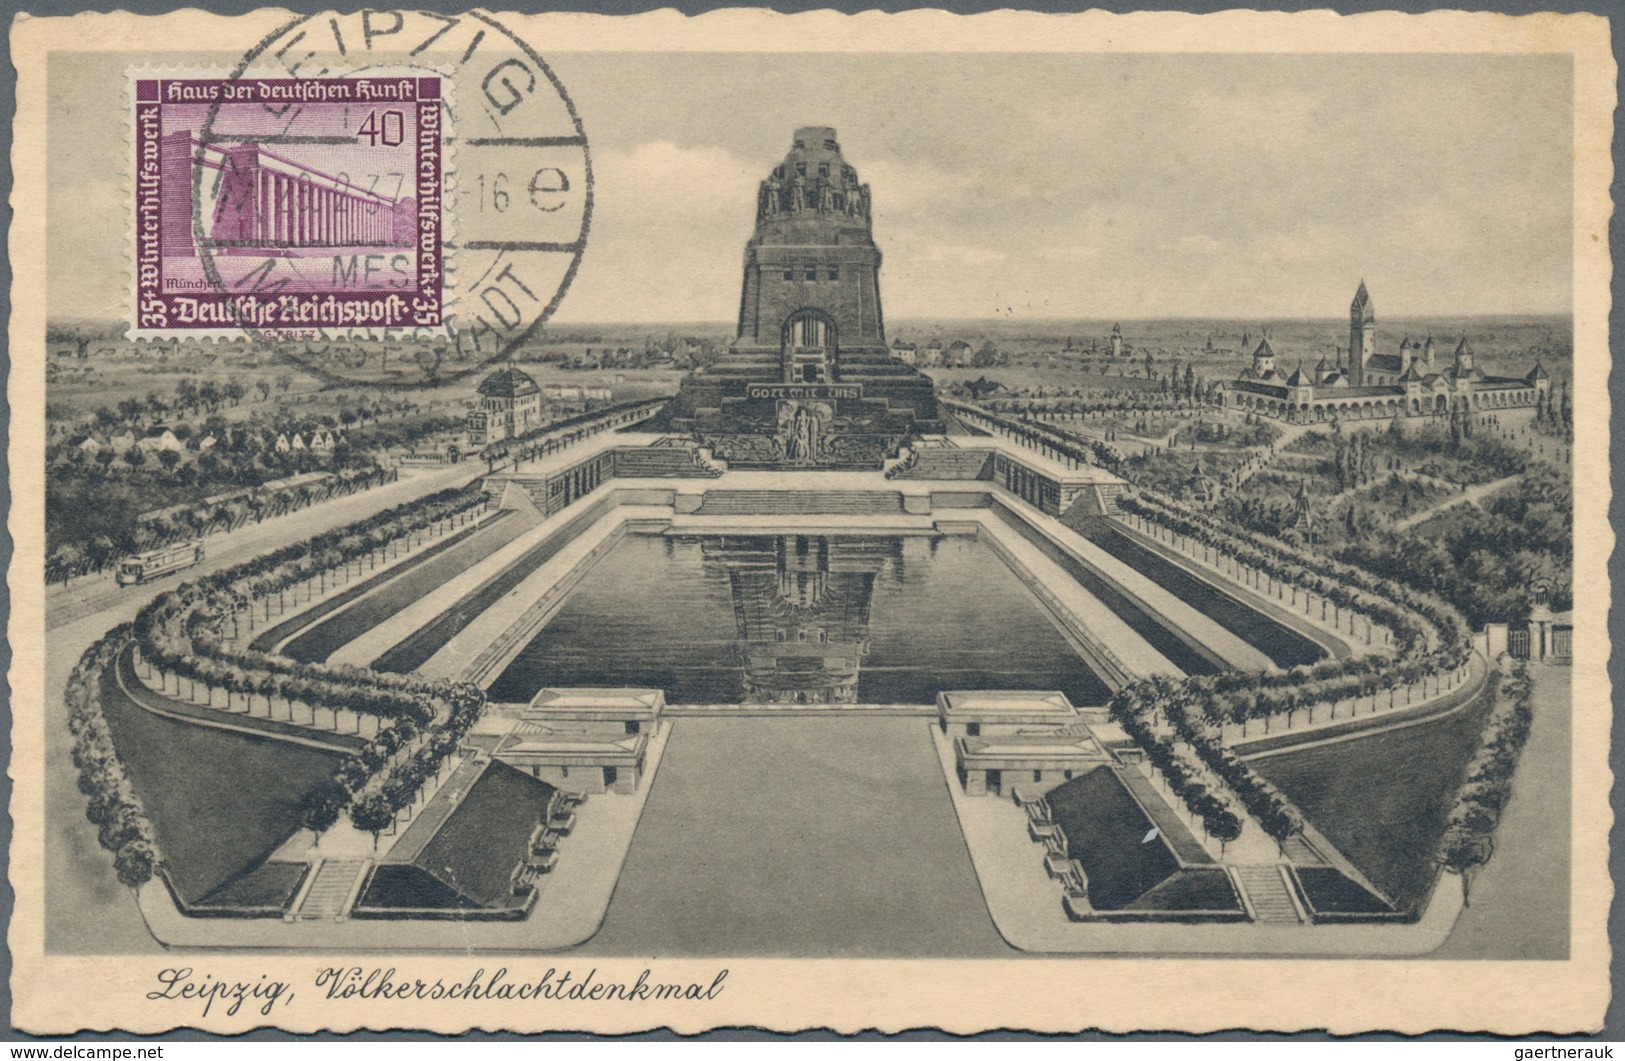 Deutsches Reich - 3. Reich: 1936/1945, SONDERSTEMPEL, Posten von ca. 350 Briefen und Karten, meist b